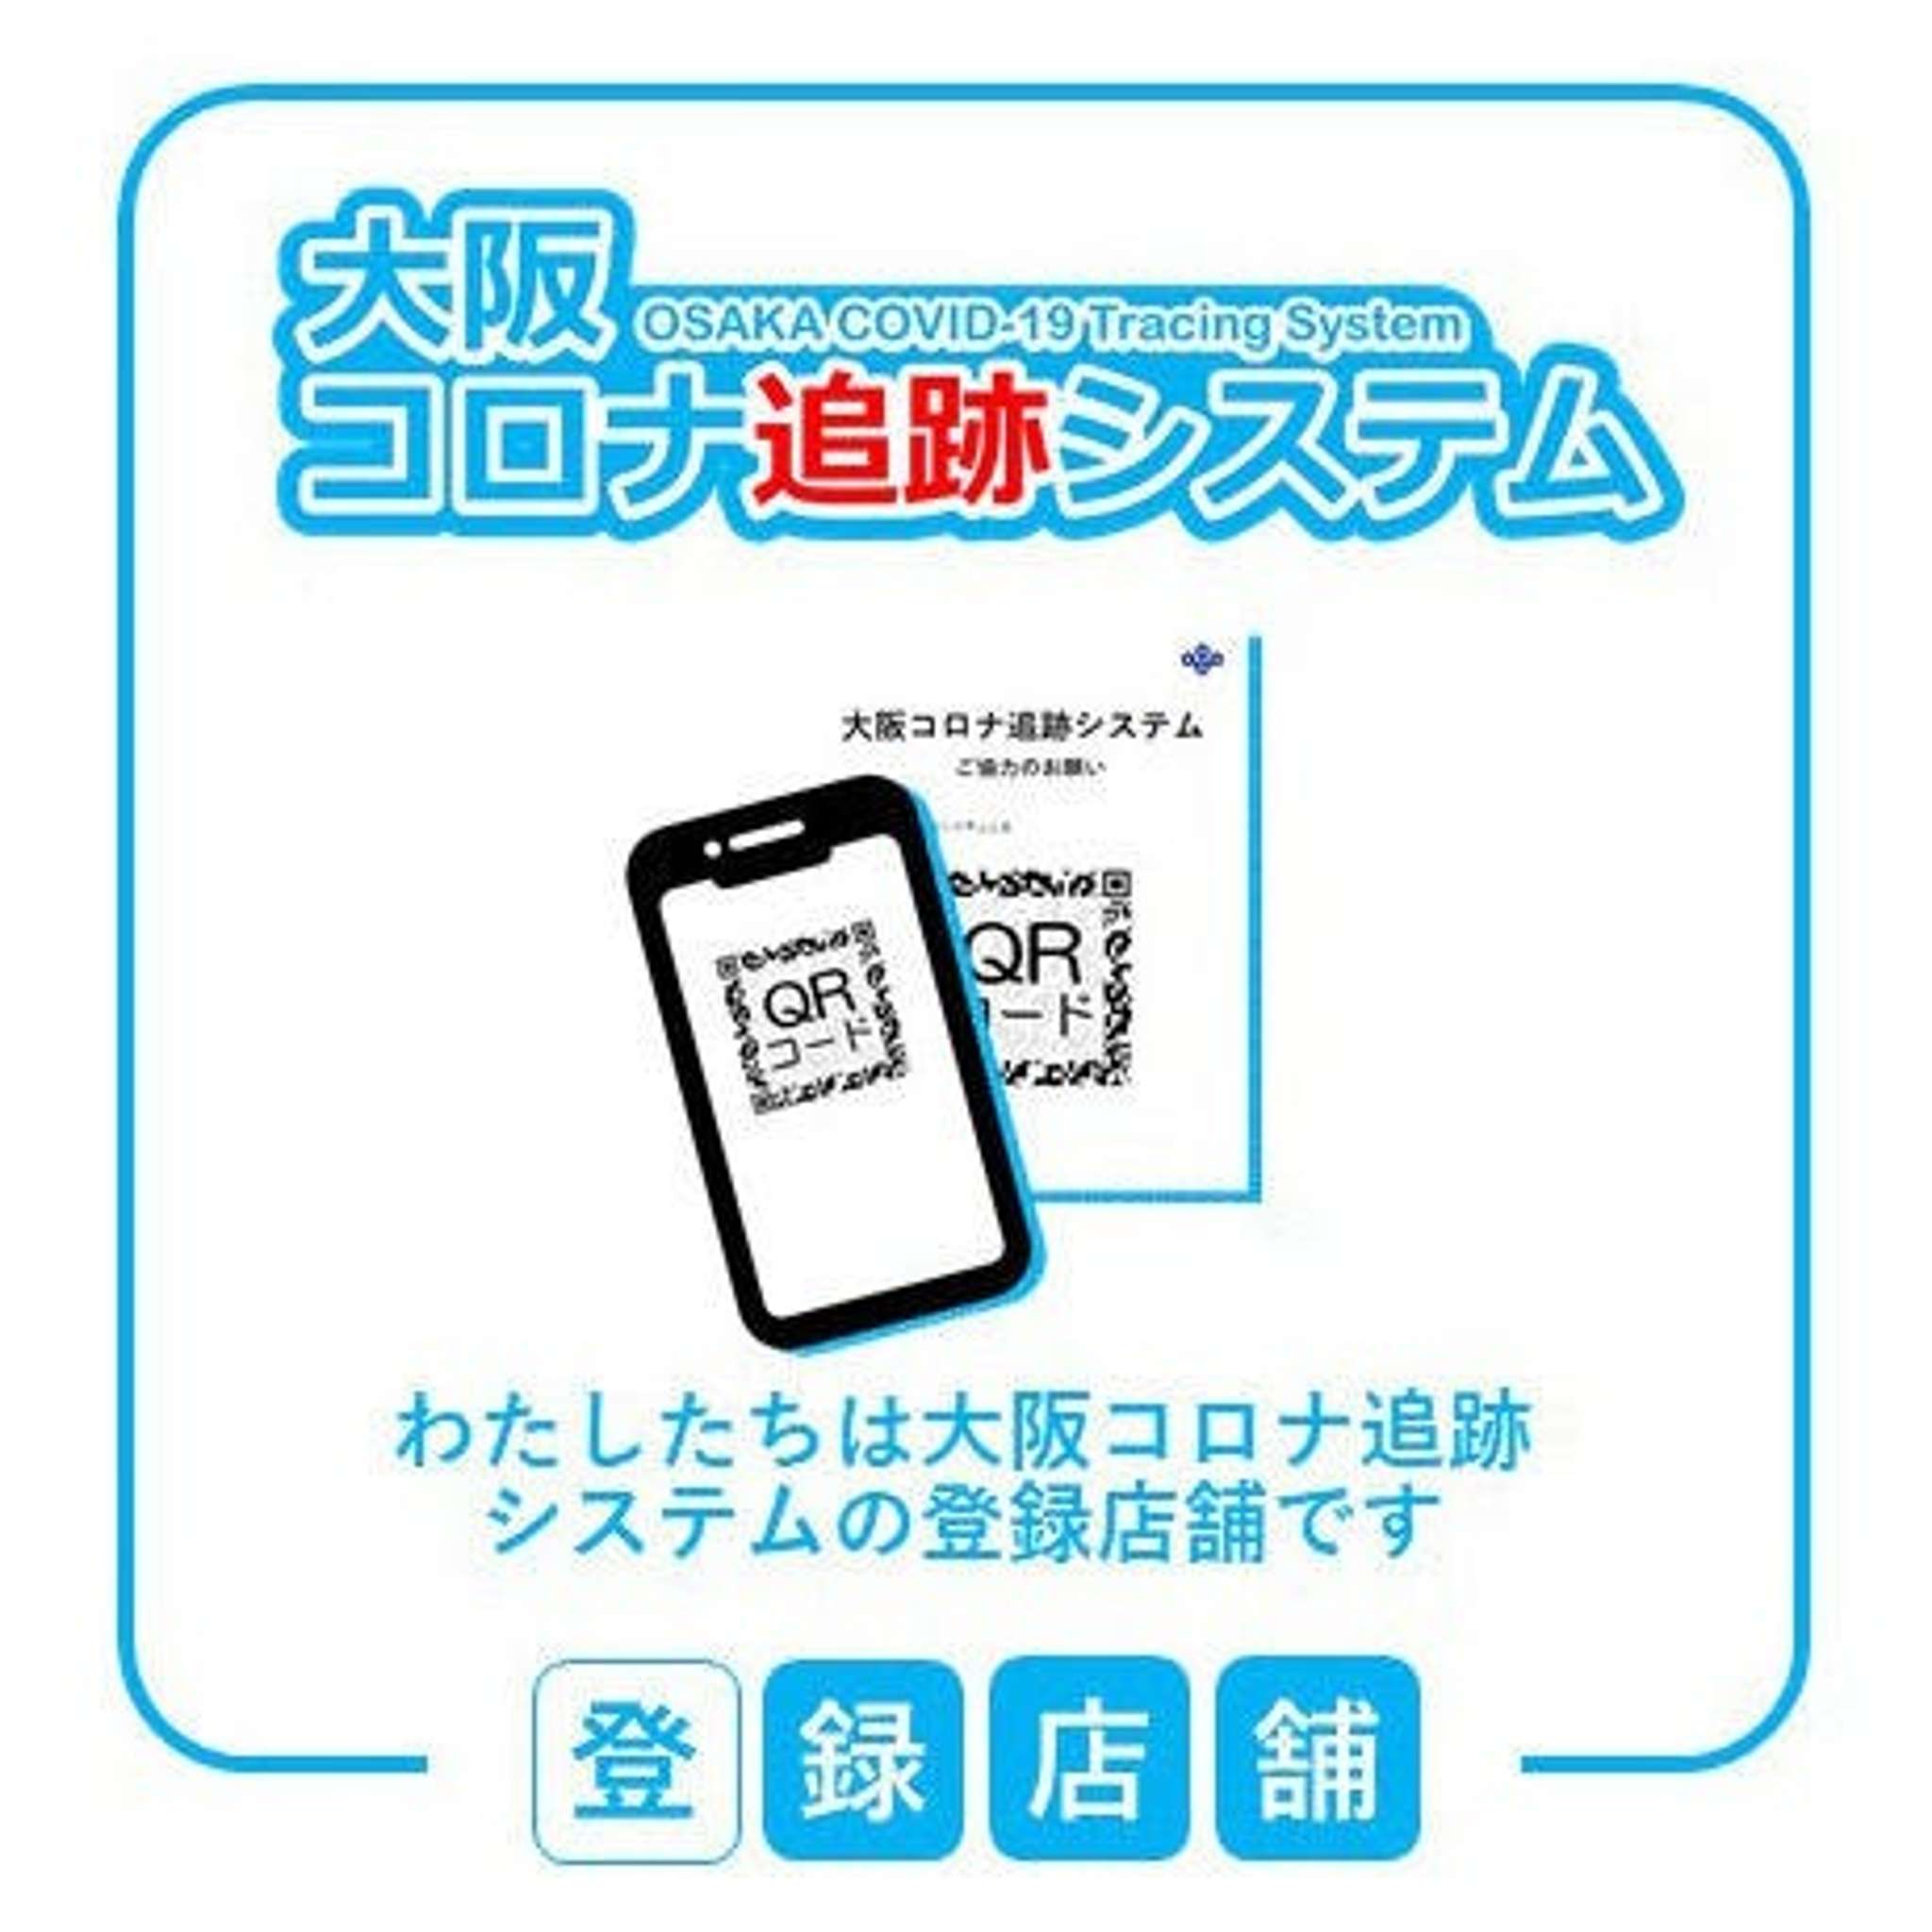 「大阪コロナ追跡システム」導入しております。登録をお願いします。